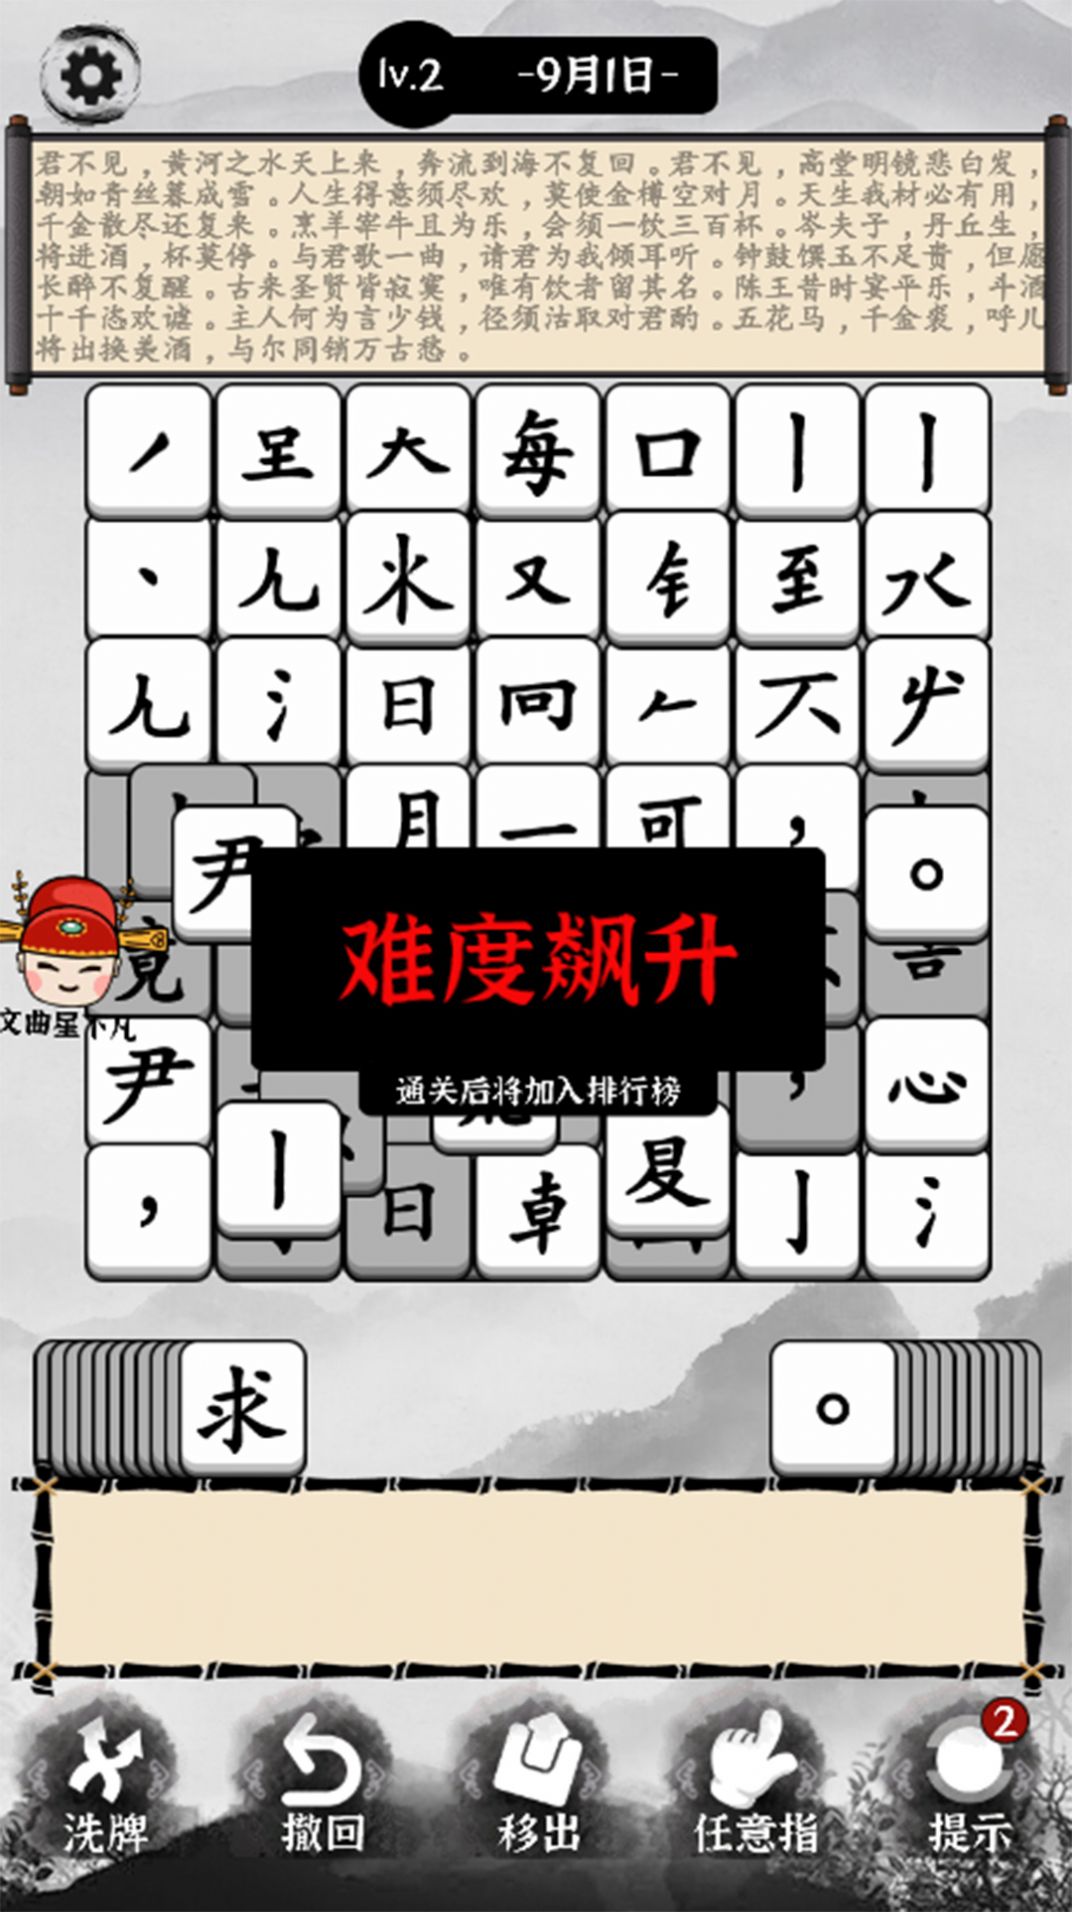 熊宝宝学汉字游戏下载,熊宝宝学汉字游戏官方版 v1.0